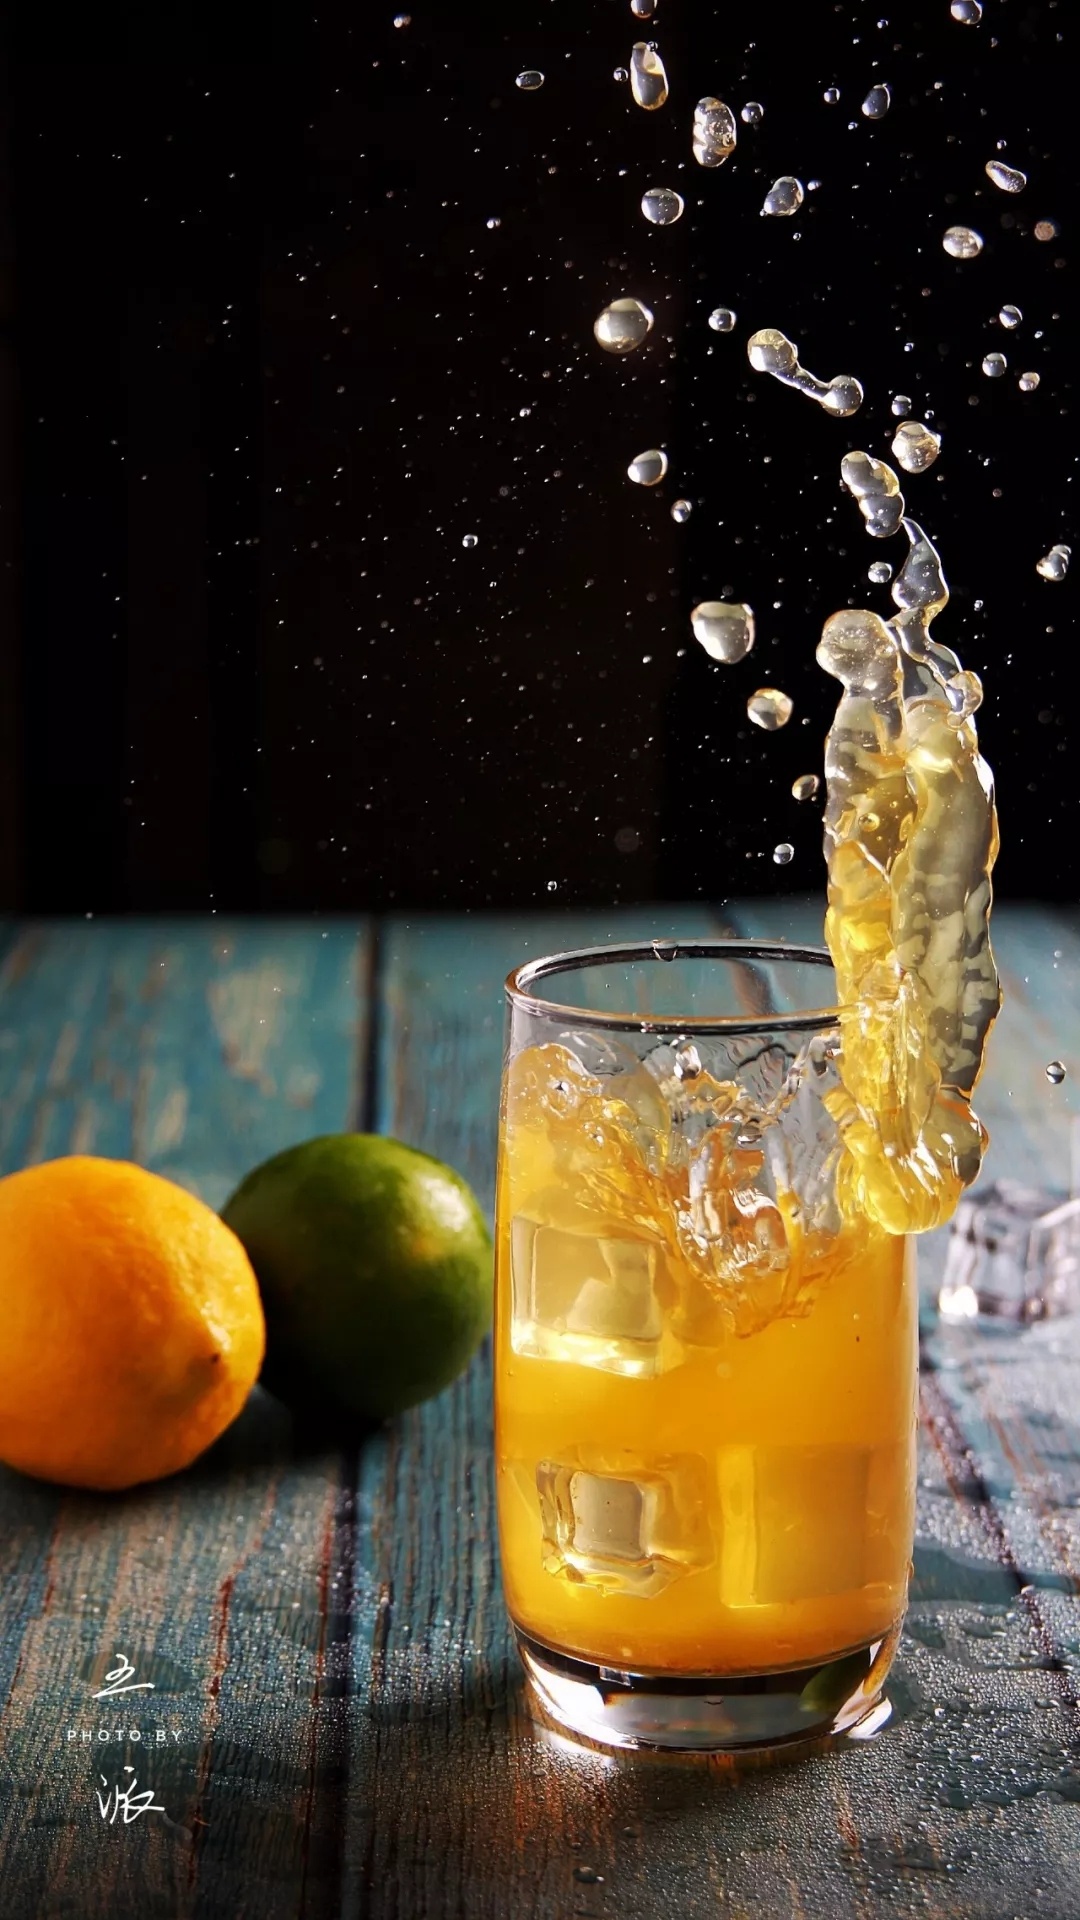 宁波饮品奶茶果汁店形象菜单设计上门拍照摄影: 橙汁